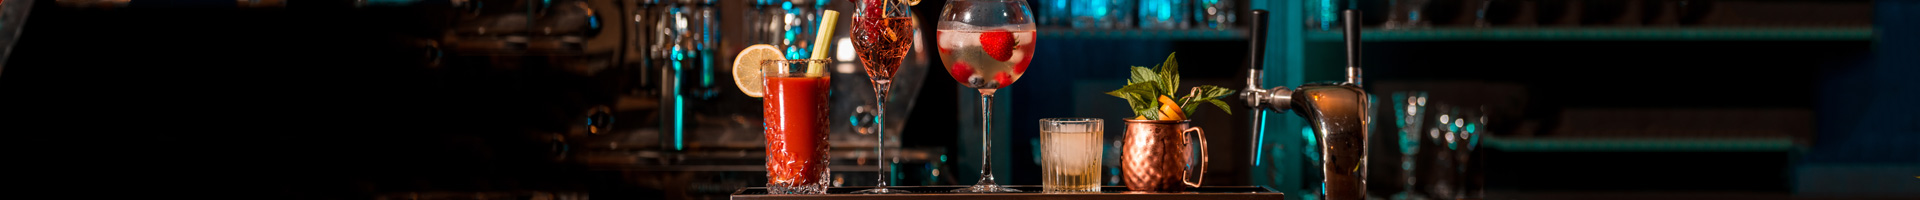 Cocktailgläser von Barstuff mit farbenfrohen Cocktail-Kreationen stehen auf dem Tresen in einer Reihe.